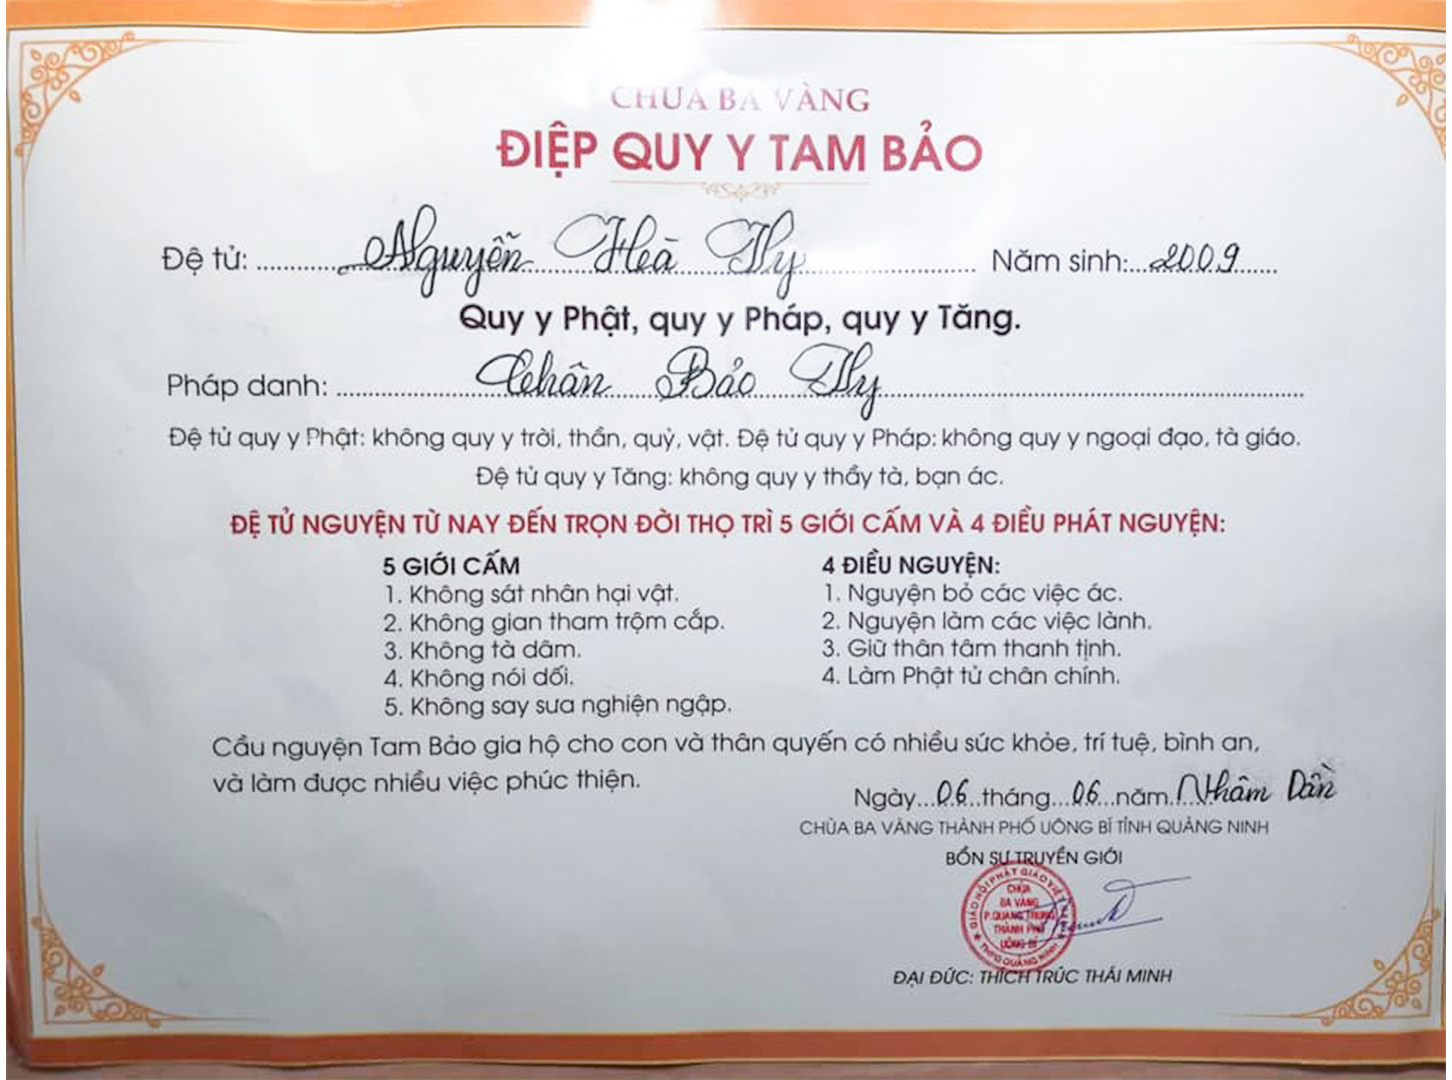 Tham gia Khóa tu mùa hè, khóa sinh Nguyễn Hà Vy được quy y Tam Bảo